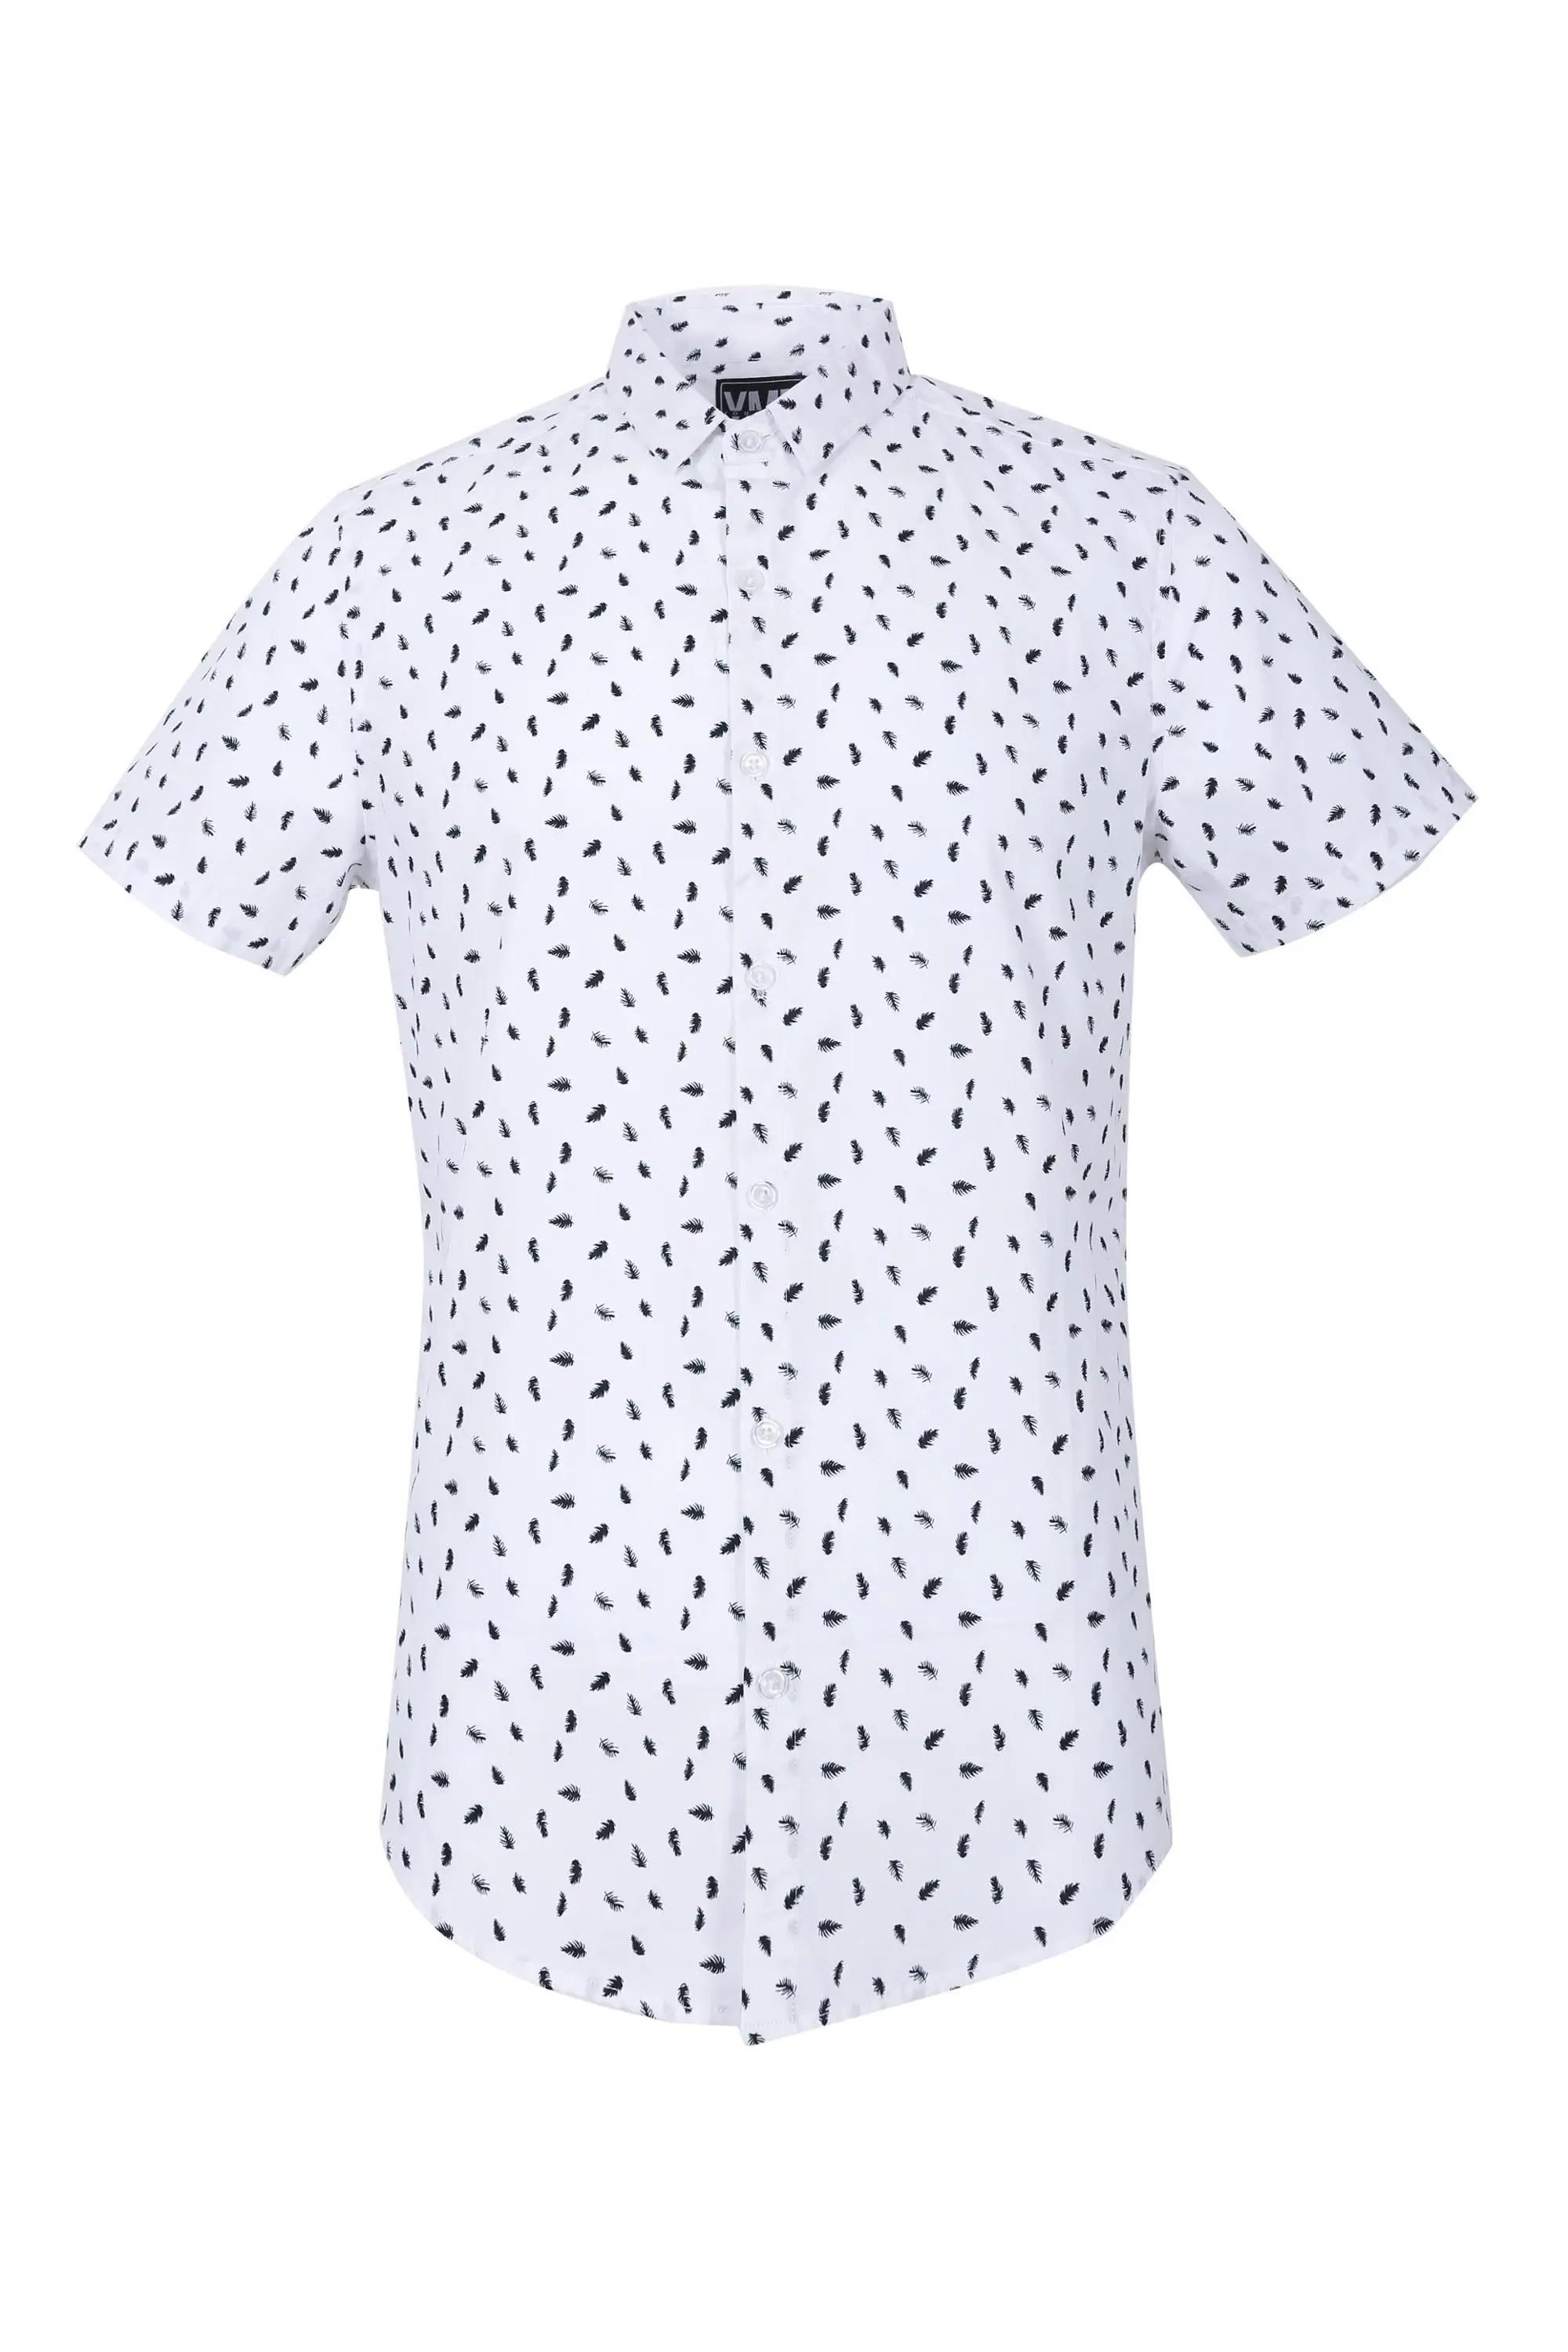 Manufaktur T Shirt Putih Kemeja T Shirt Harga Mesin Cetak 3d Polo